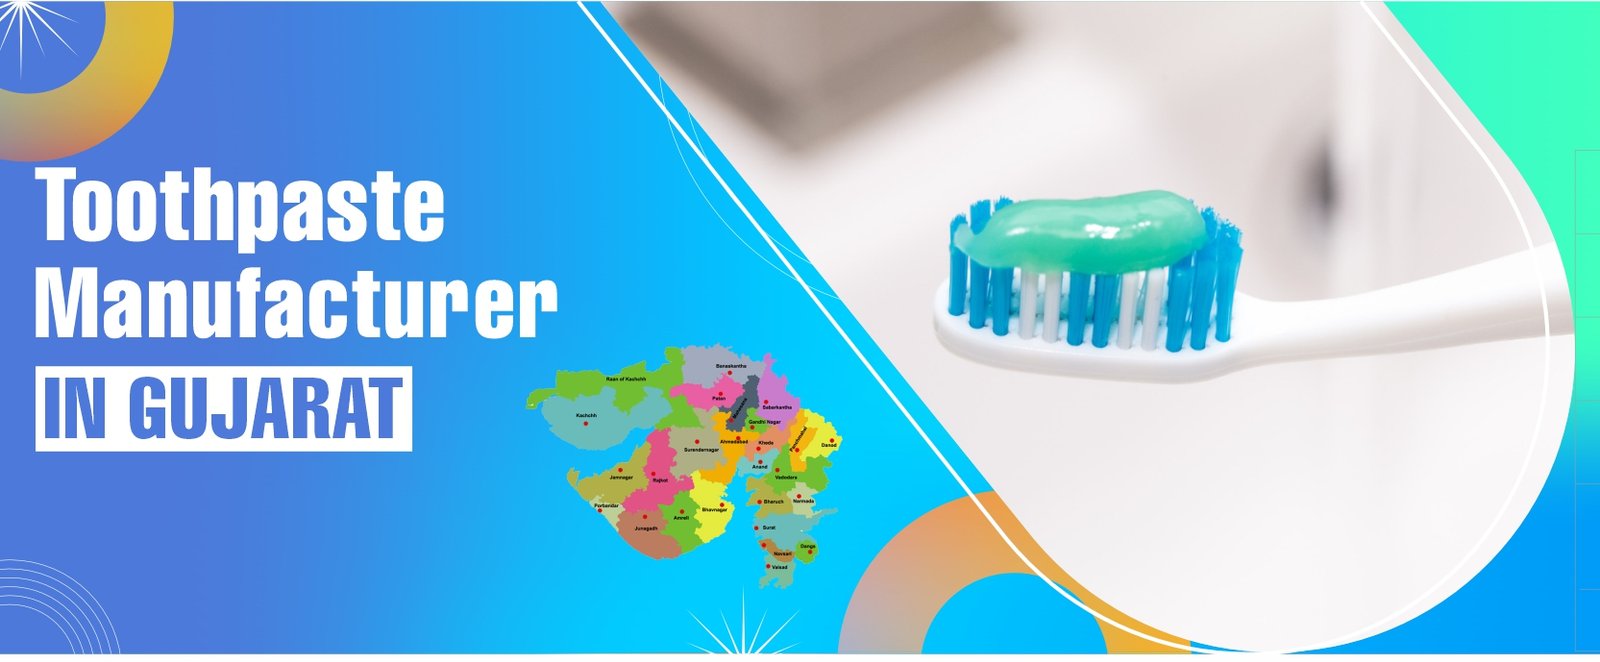 Toothpaste Manufacturer In Gujarat